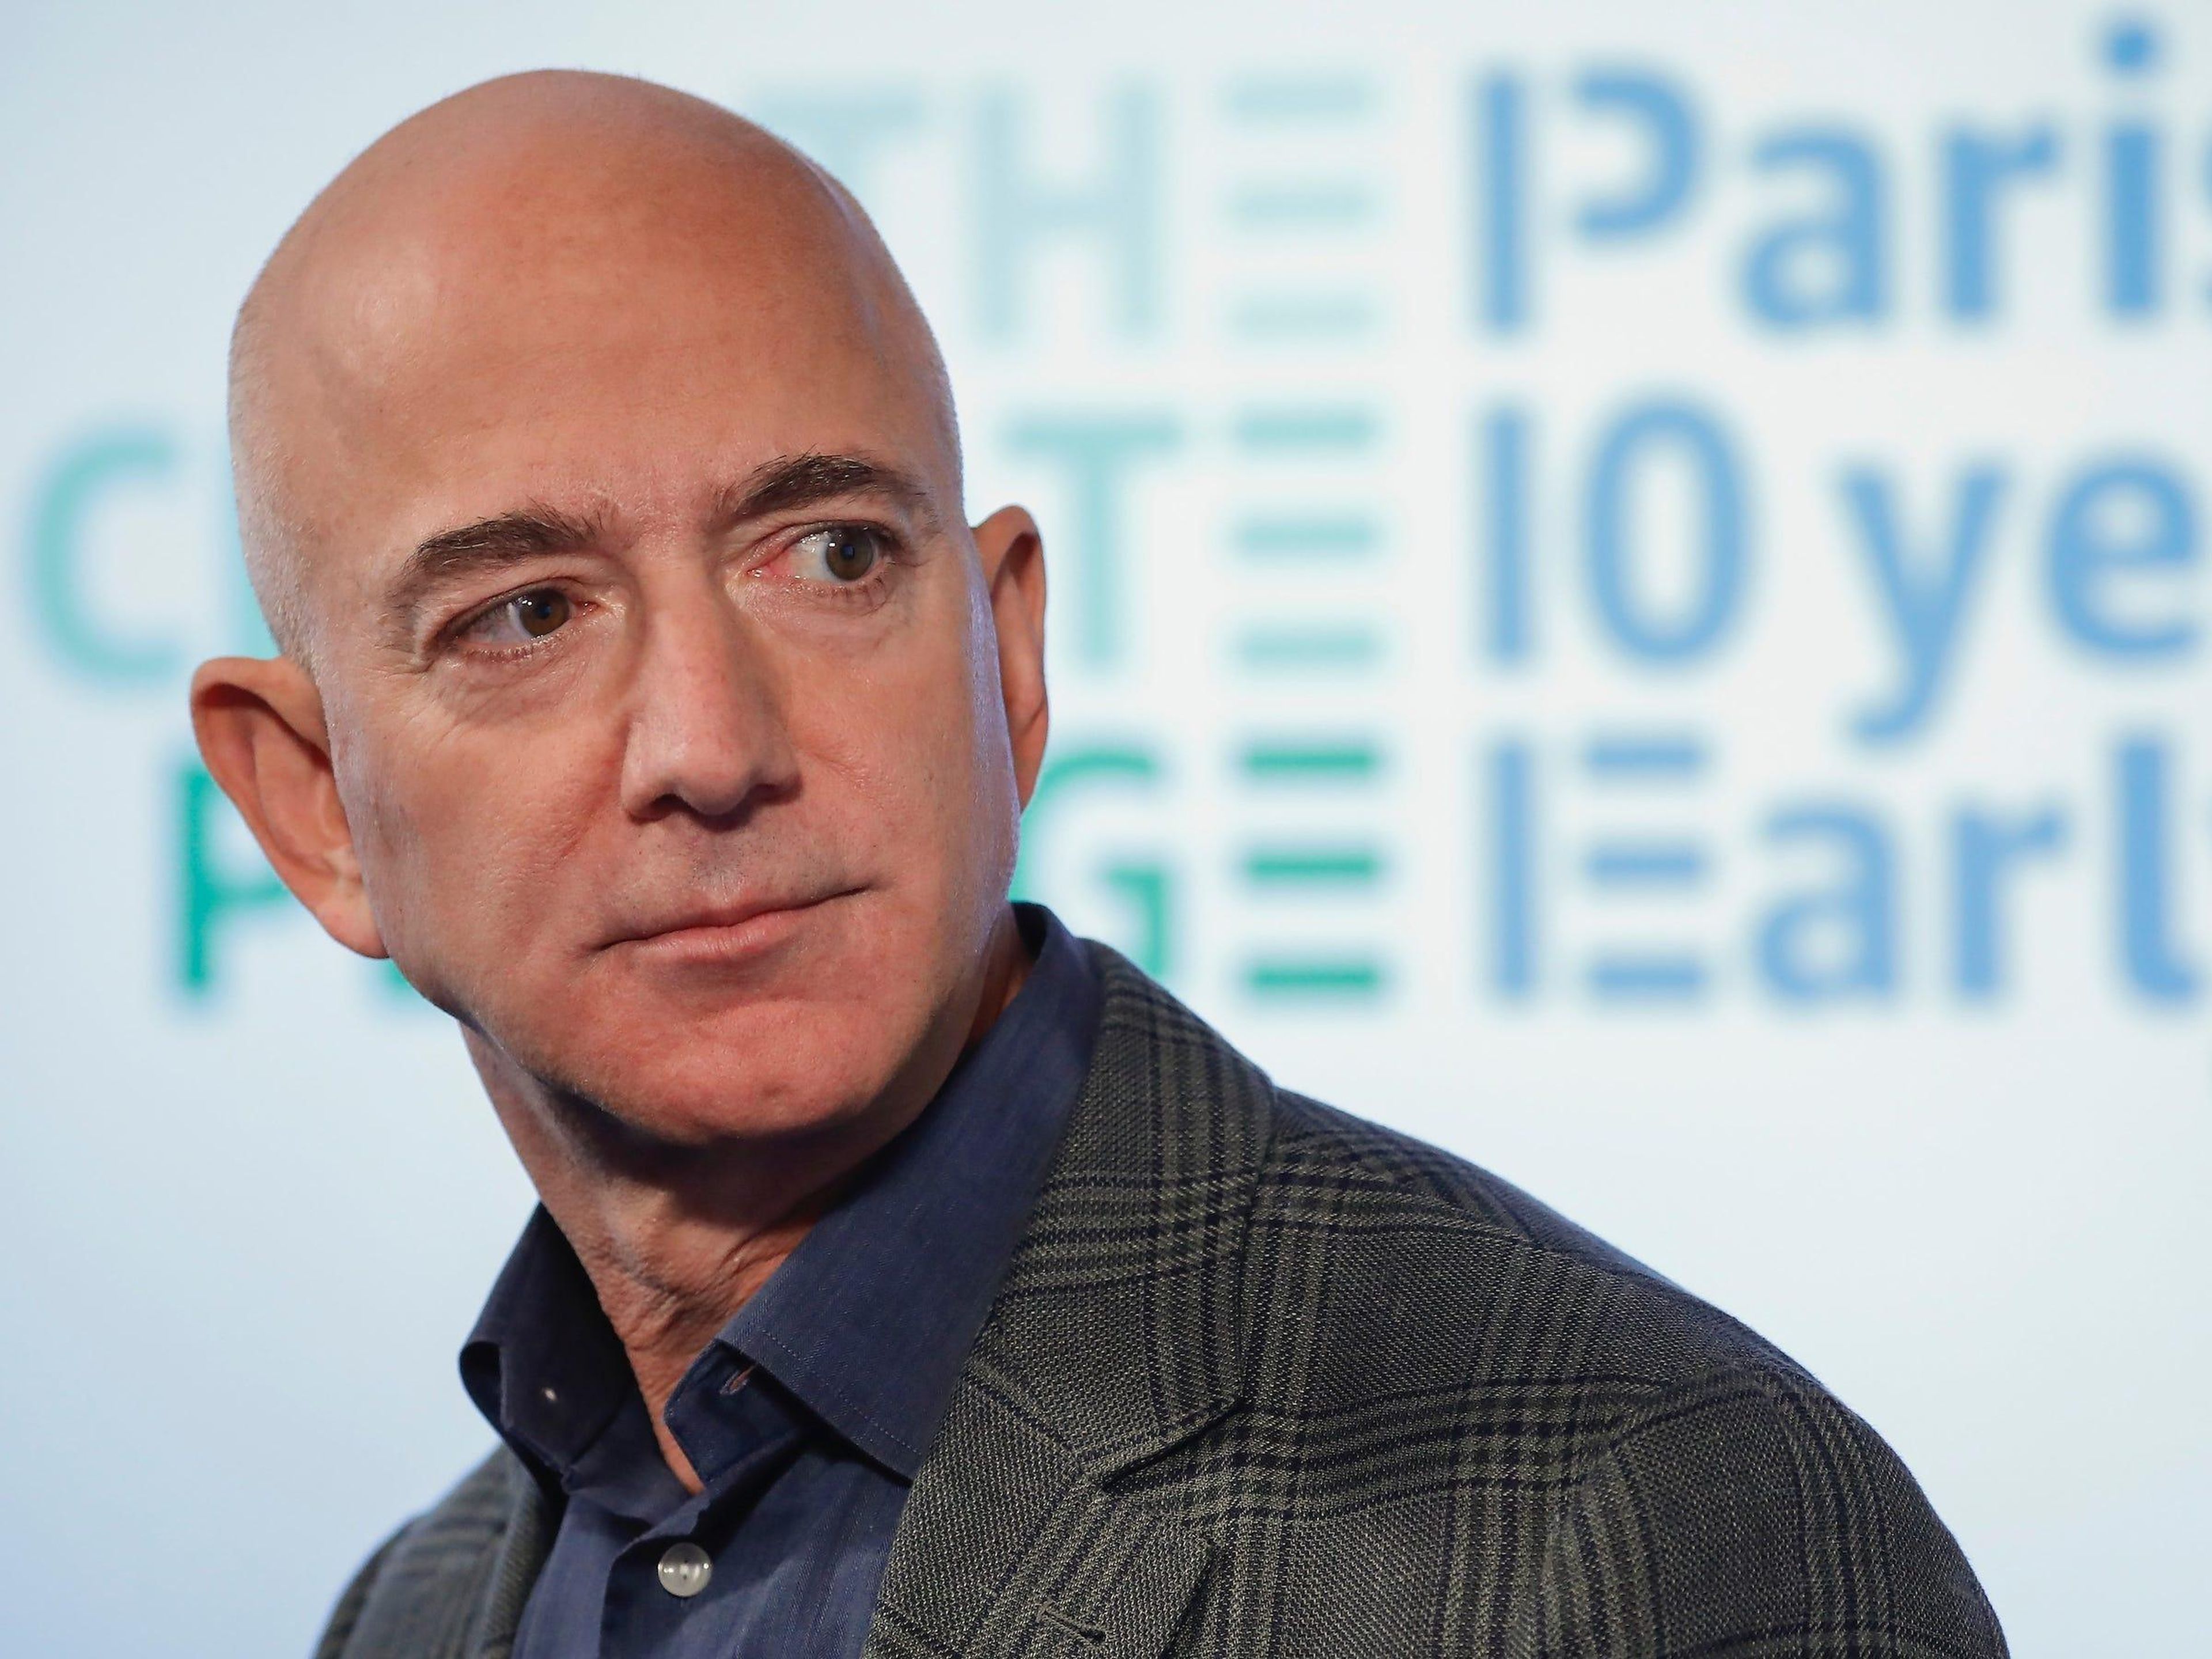 Jeff Bezos desliza que pudo haber violado la privacidad de terceros